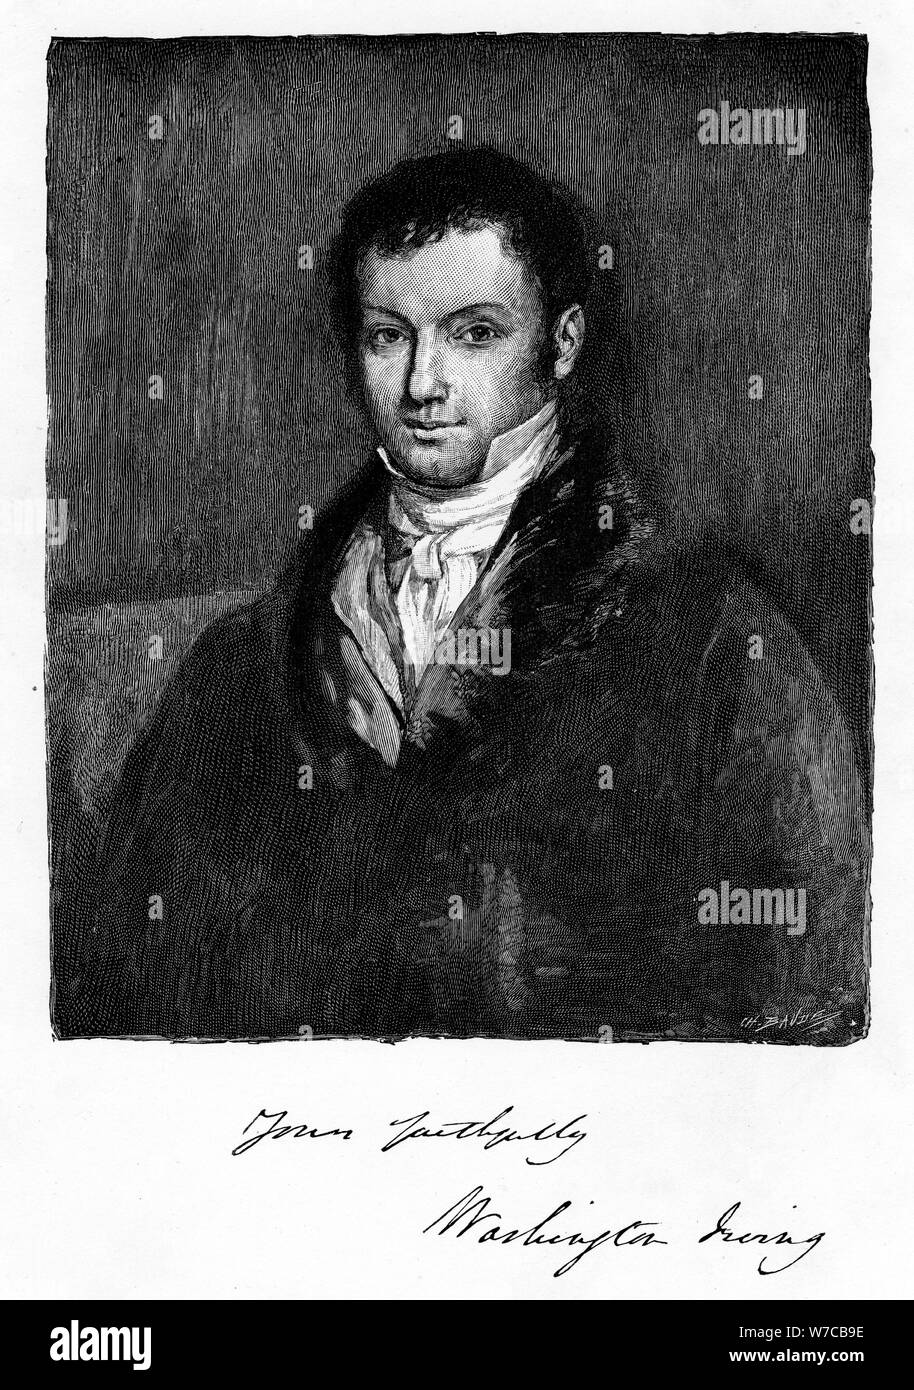 John Byrom anglais du 18e siècle, l'écrivain et poète né à Manchester, 1821. Artiste : Anon Banque D'Images